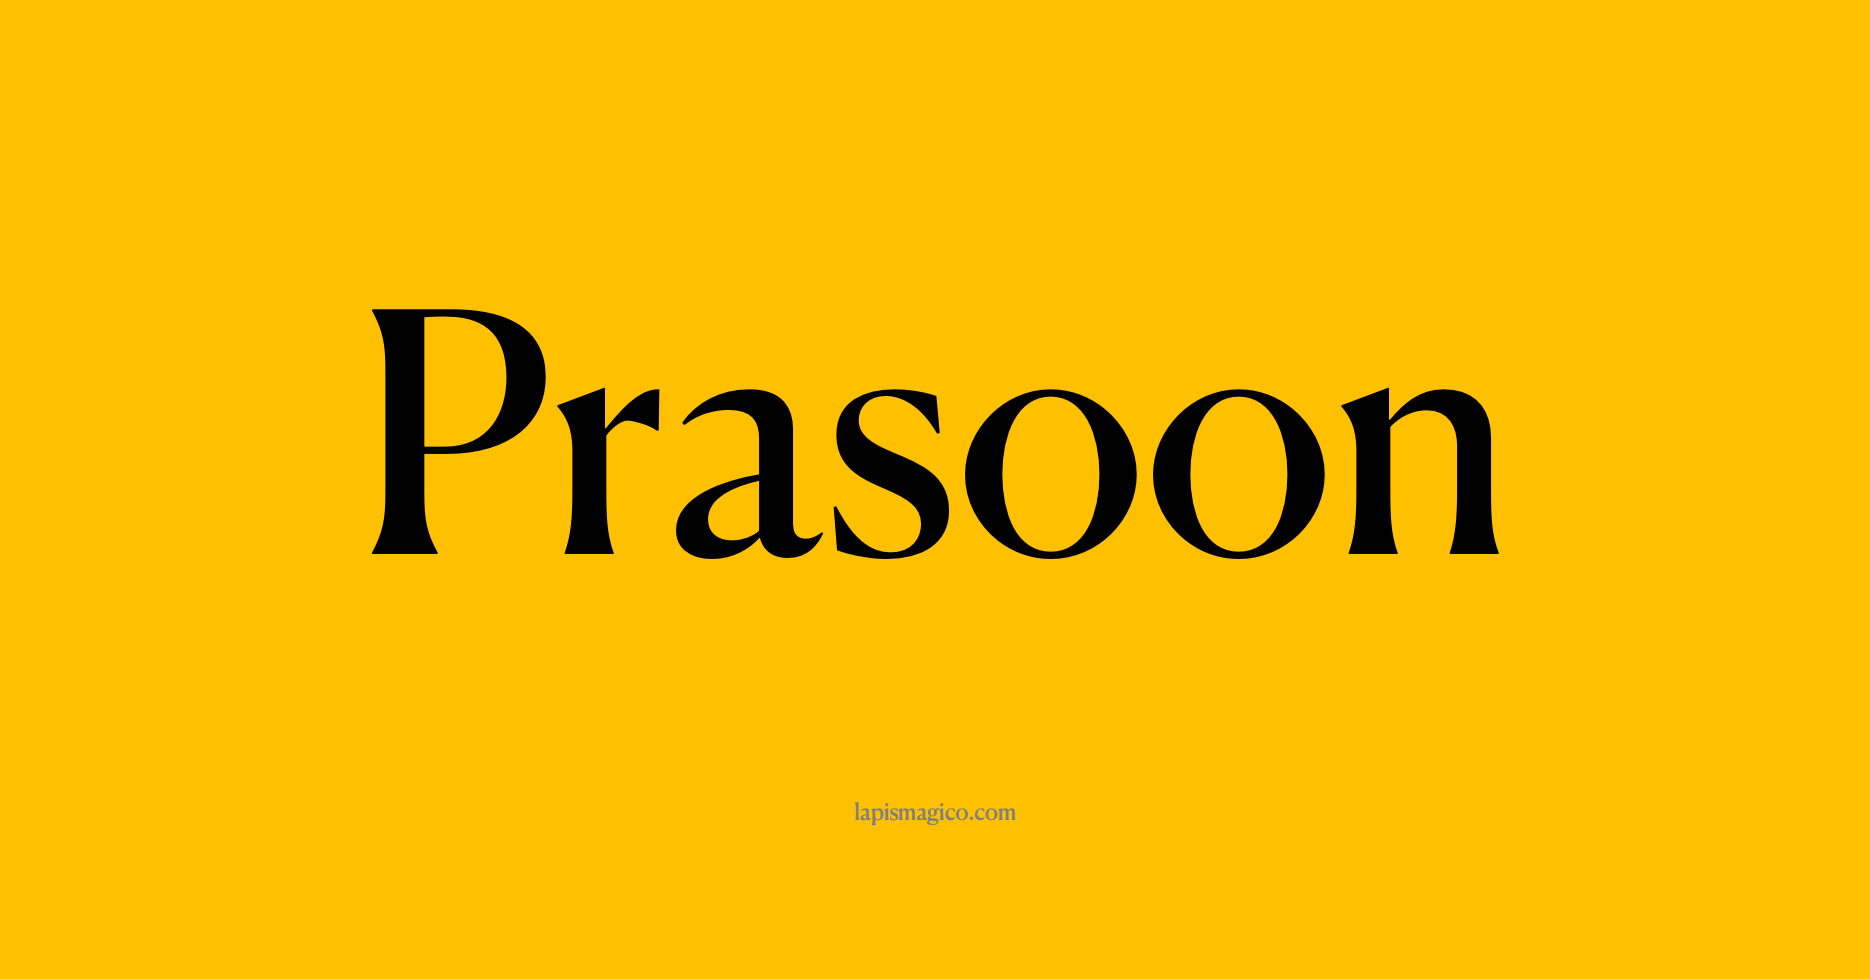 Nome Prasoon, ficha divertida com pontilhado para crianças